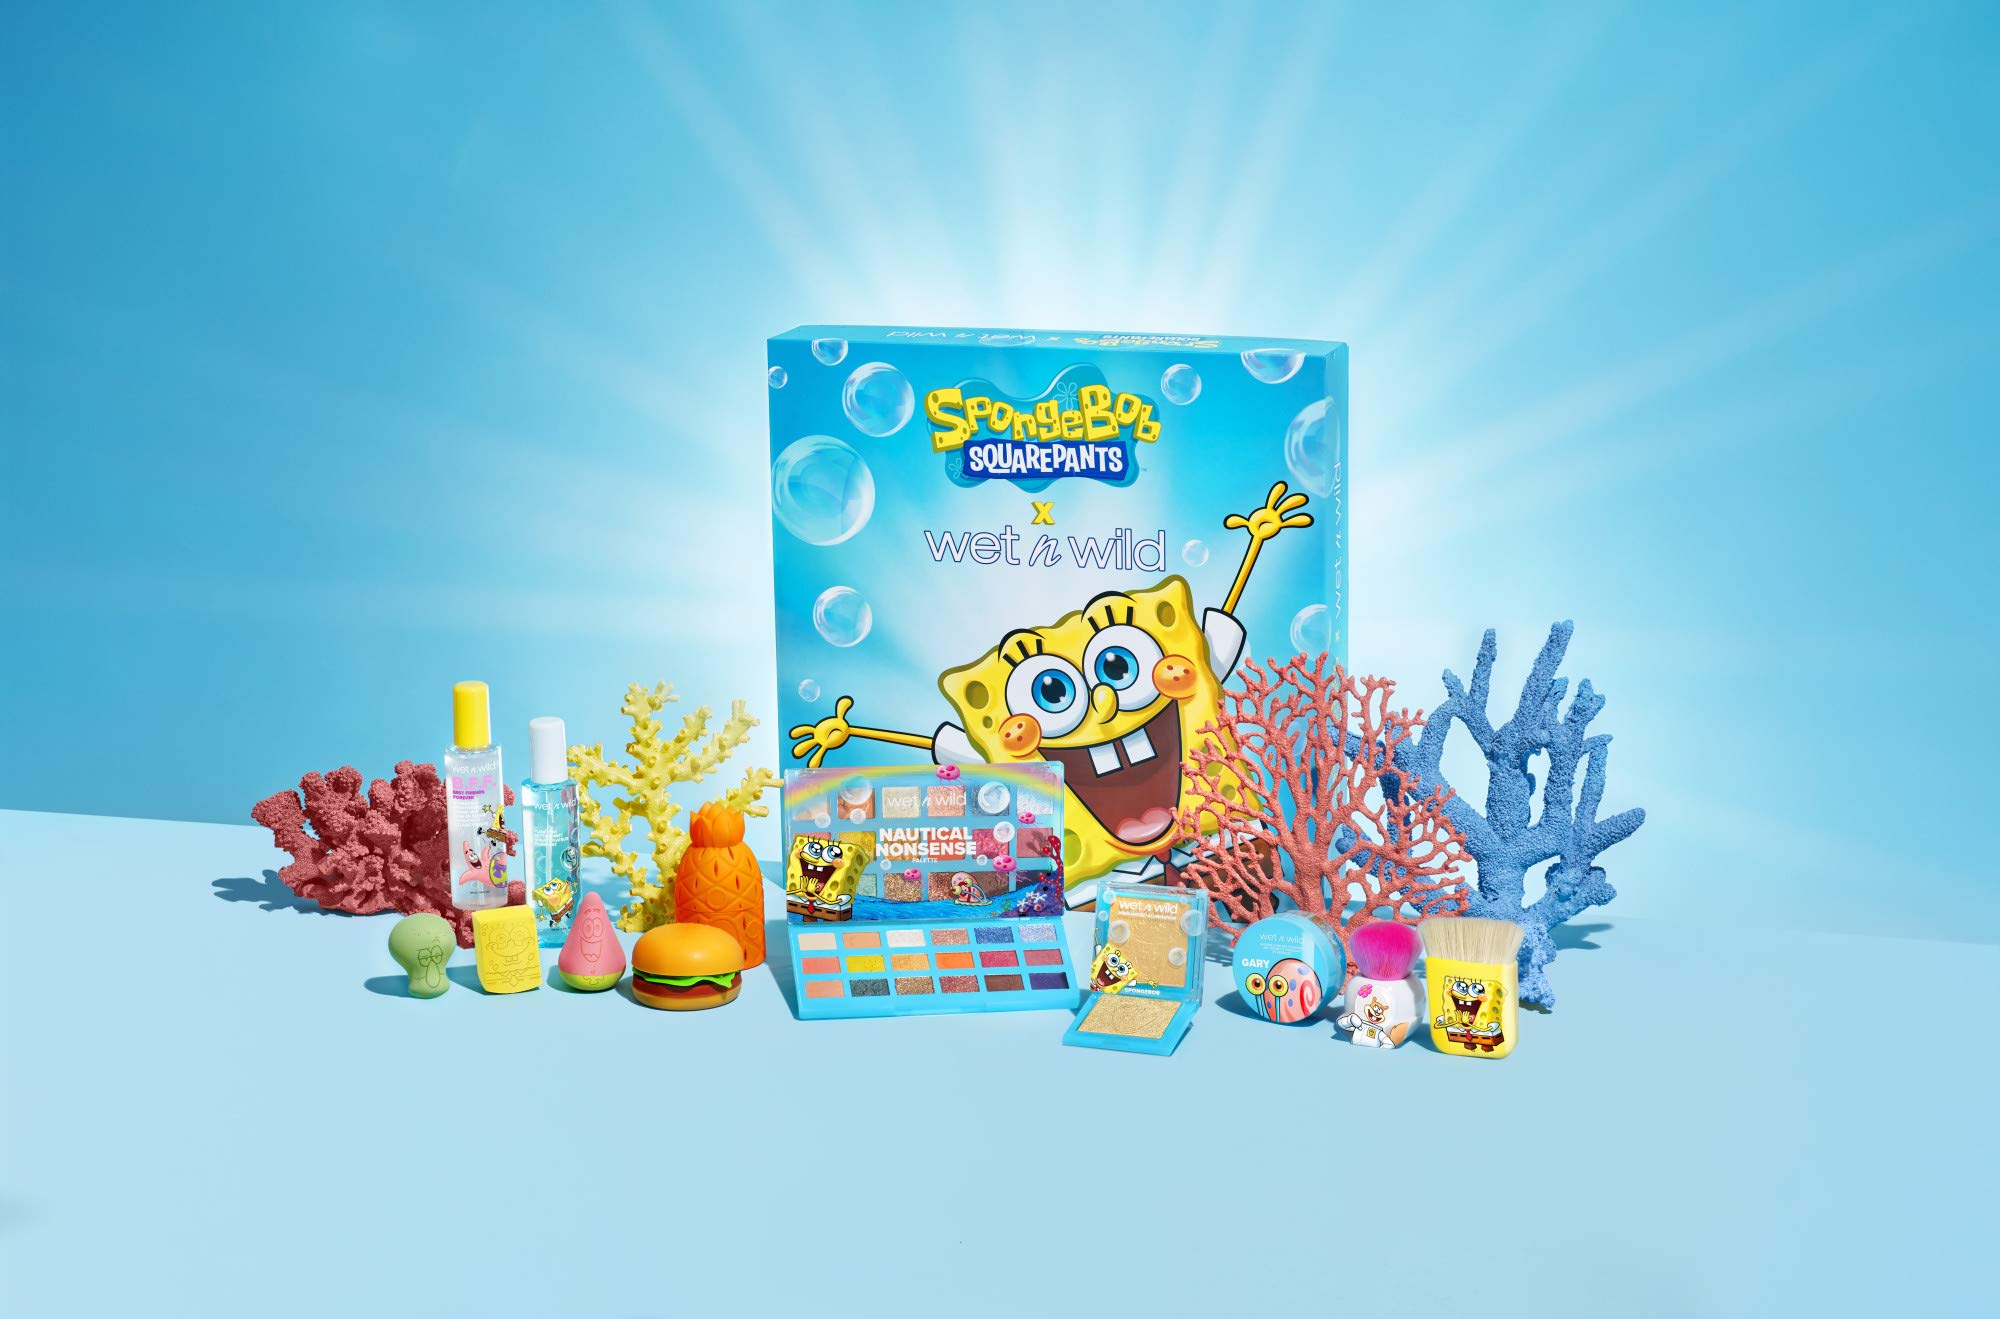 wet n wild SpongeBob Squarepants Makeup Collection PR Box - Makeup Set with Versatile Brushes, Unique Sponges,Vibrant Buildable & Blendable Palettes, Cruelty-Free & Vegan